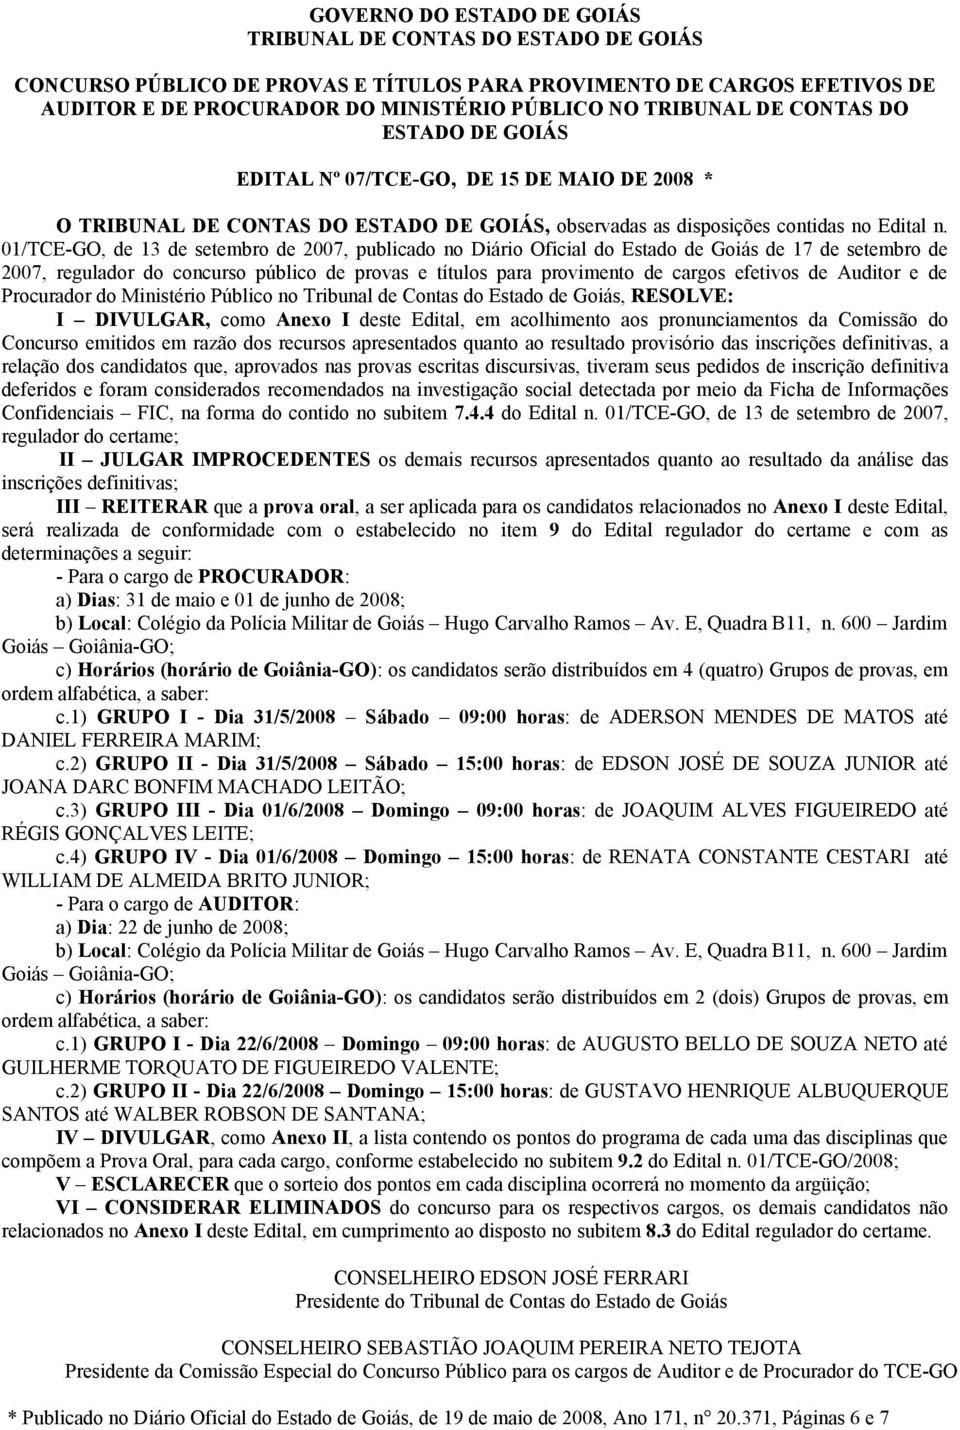 01/TCE-GO, de 13 de setembro de 2007, publicado no Diário Oficial do Estado de Goiás de 17 de setembro de 2007, regulador do concurso público de provas e títulos para provimento de cargos efetivos de